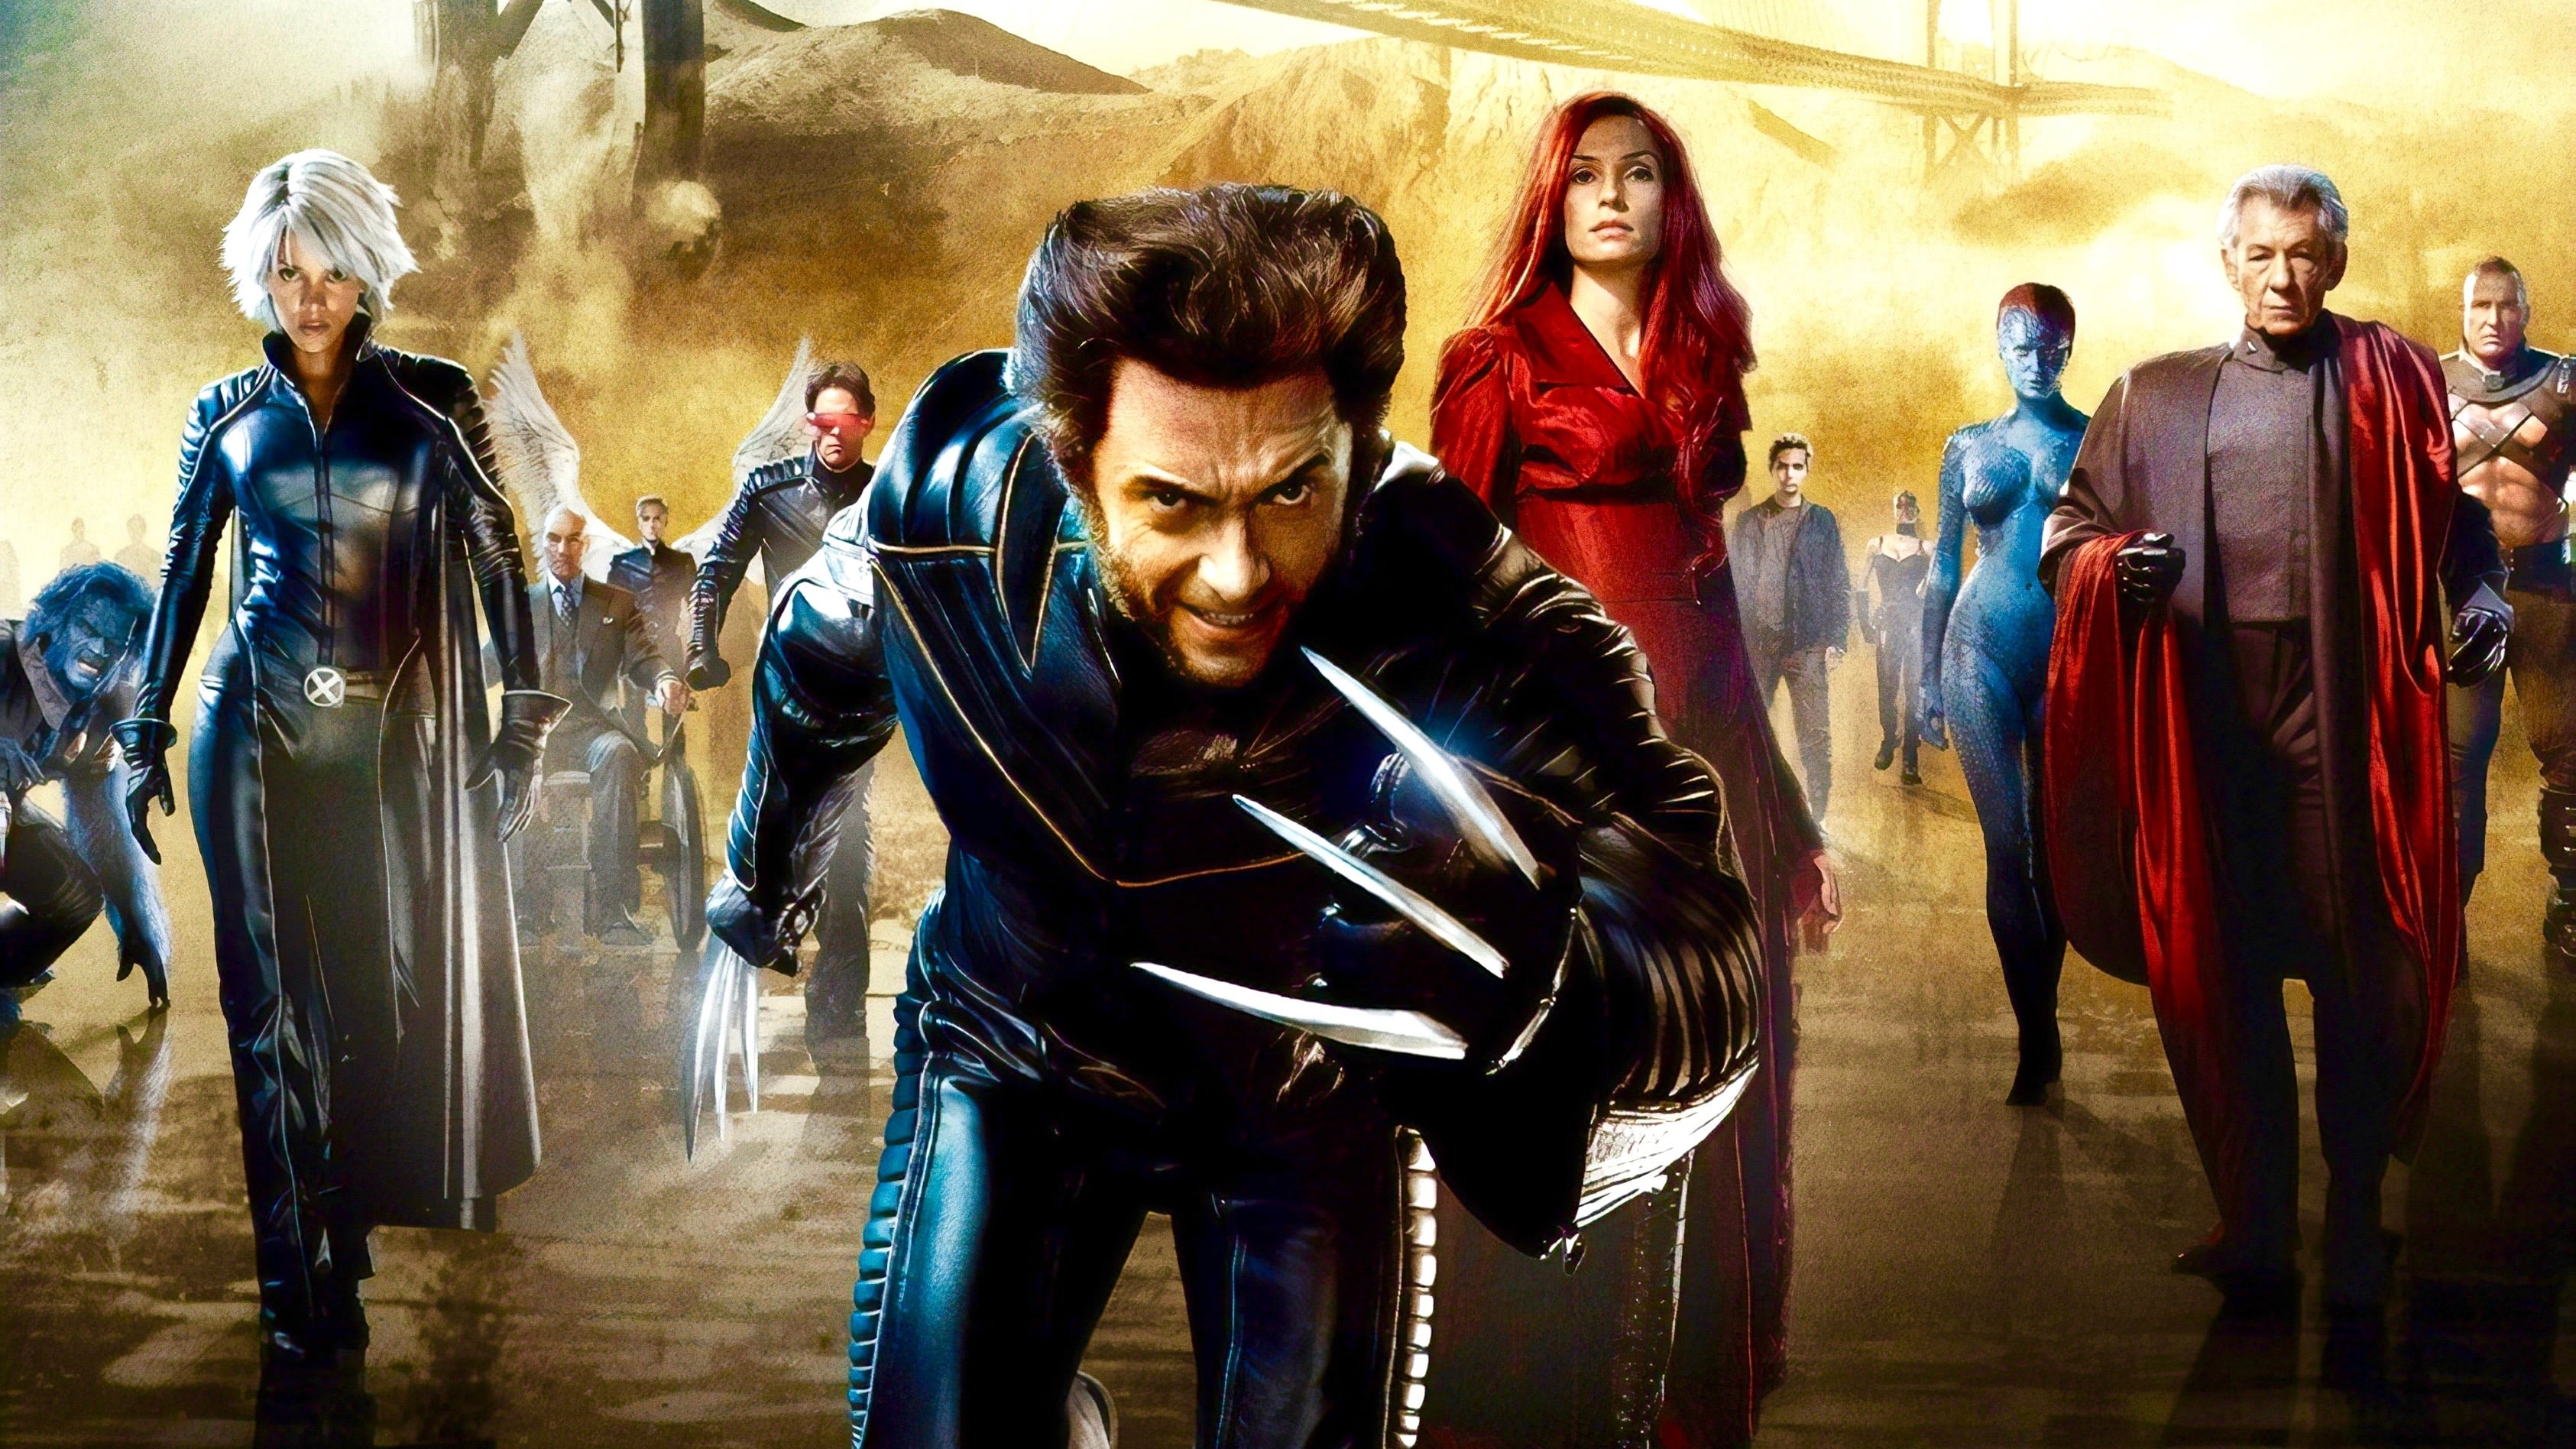 X-Men 3: La Batalla Final